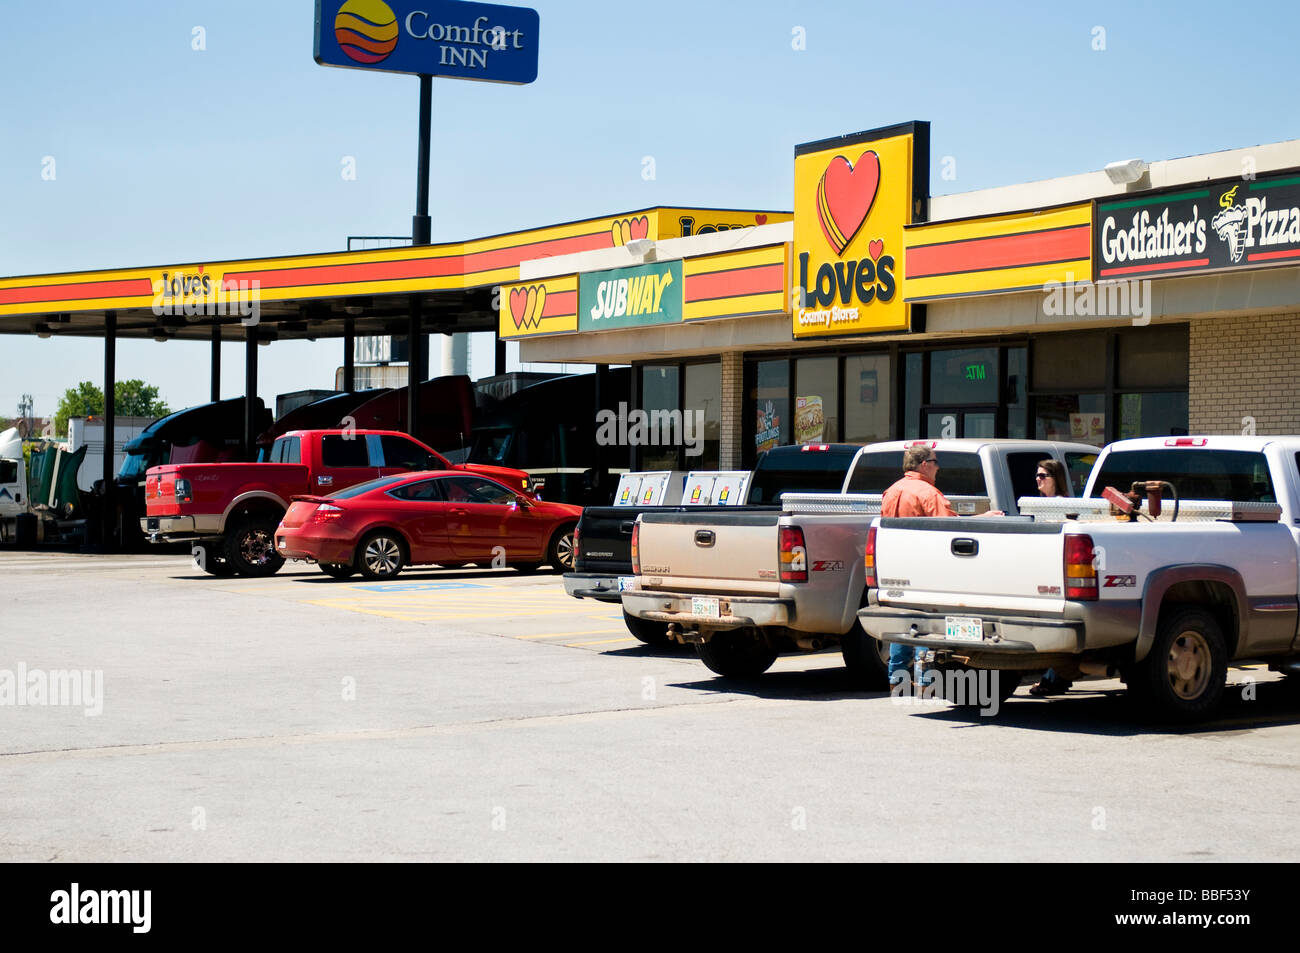 Die Liebe Land speichern, eine Kette Supermarkt und Tankstelle neben der Pate Pizza in Oklahoma City, Oklahoma, USA. Stockfoto